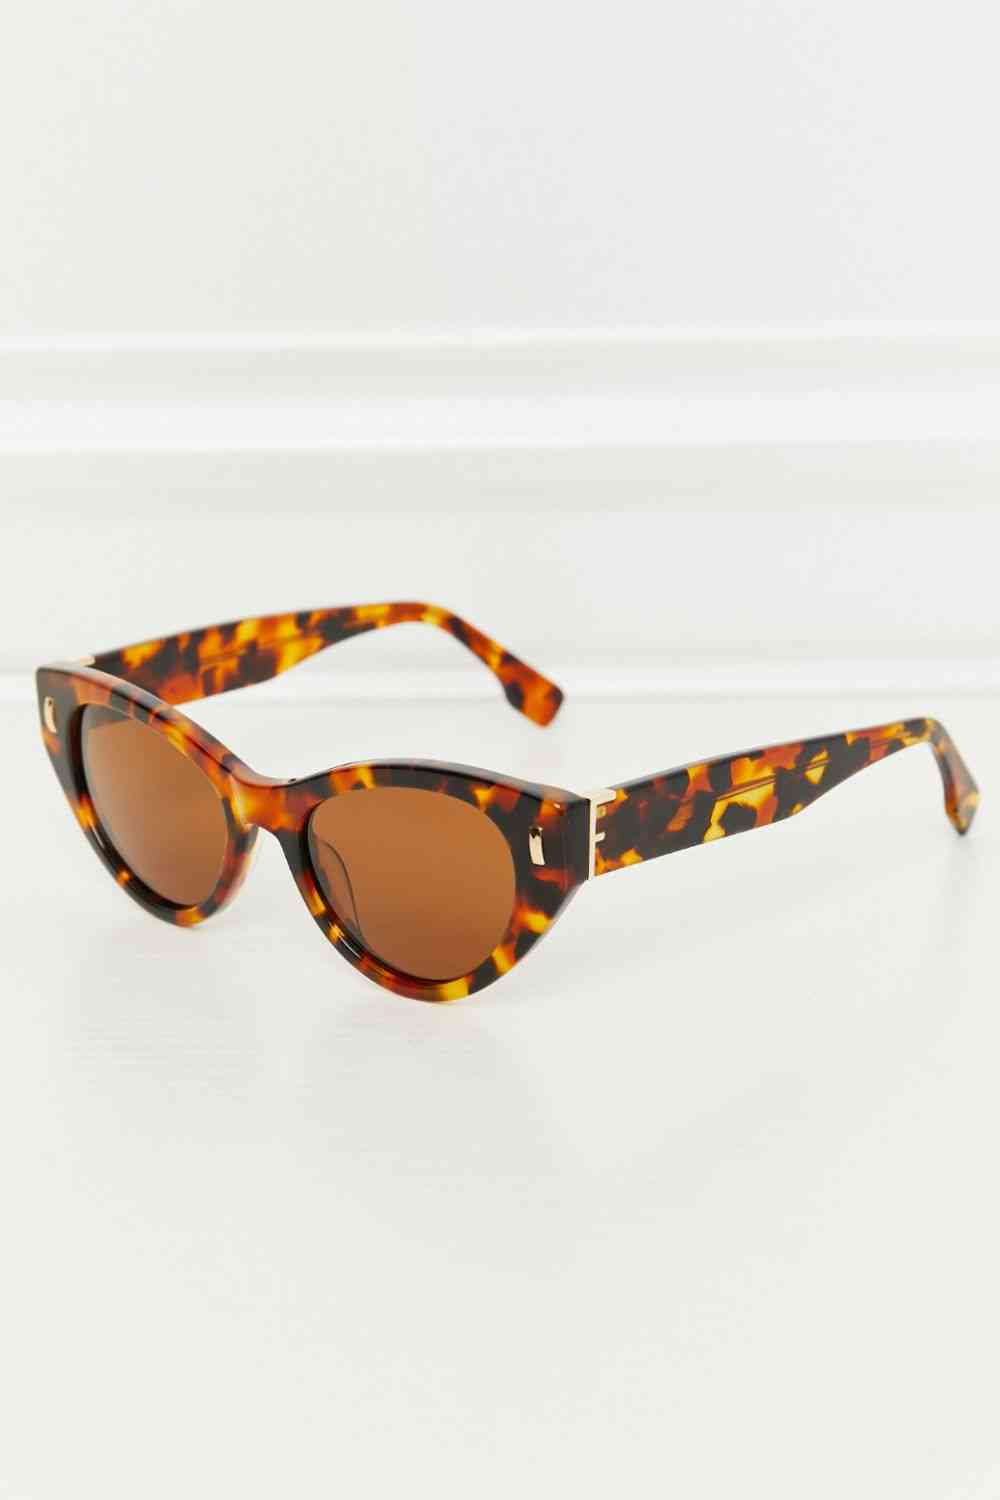 TEEK - Tangerine Cateye Tortoiseshell Sunglasses EYEGLASSES TEEK Trend   